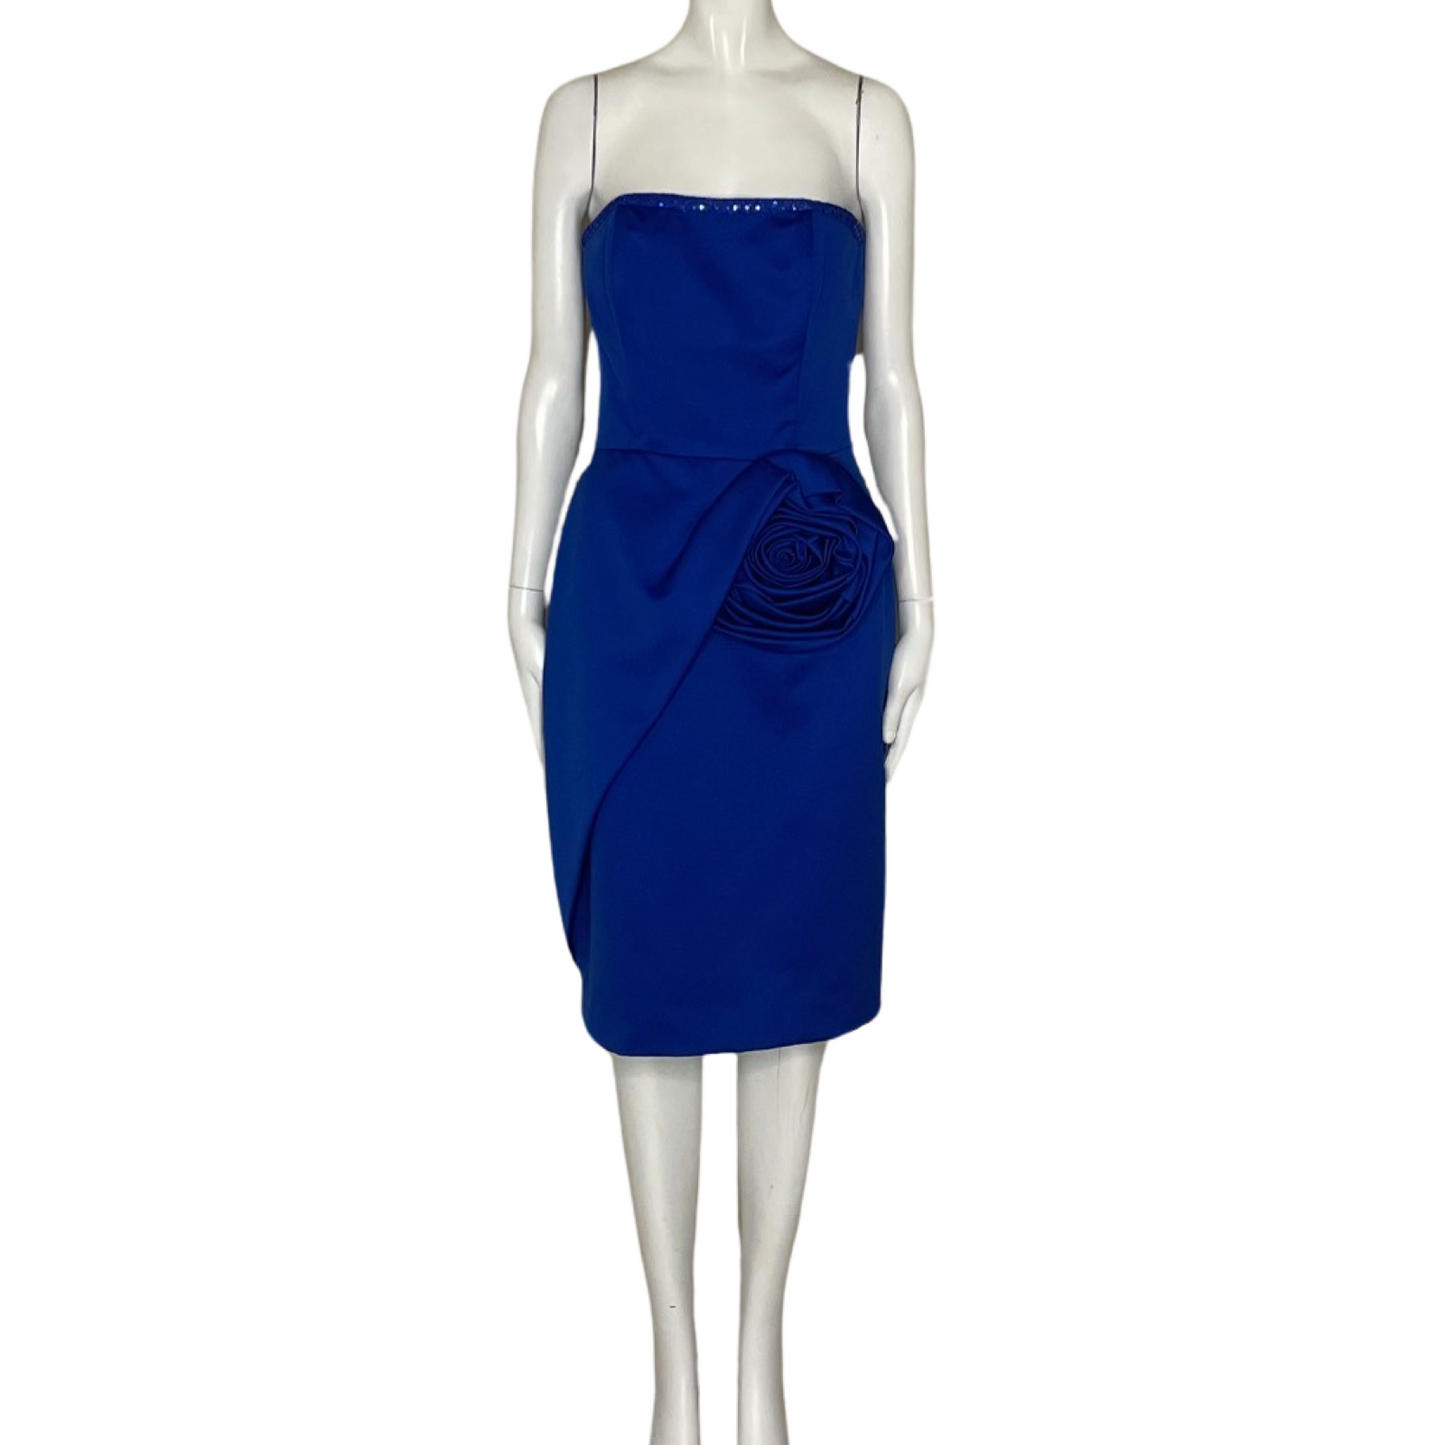 Vestido Victor Costa Mini Flor Relieve Strapless
Azul-Talla M